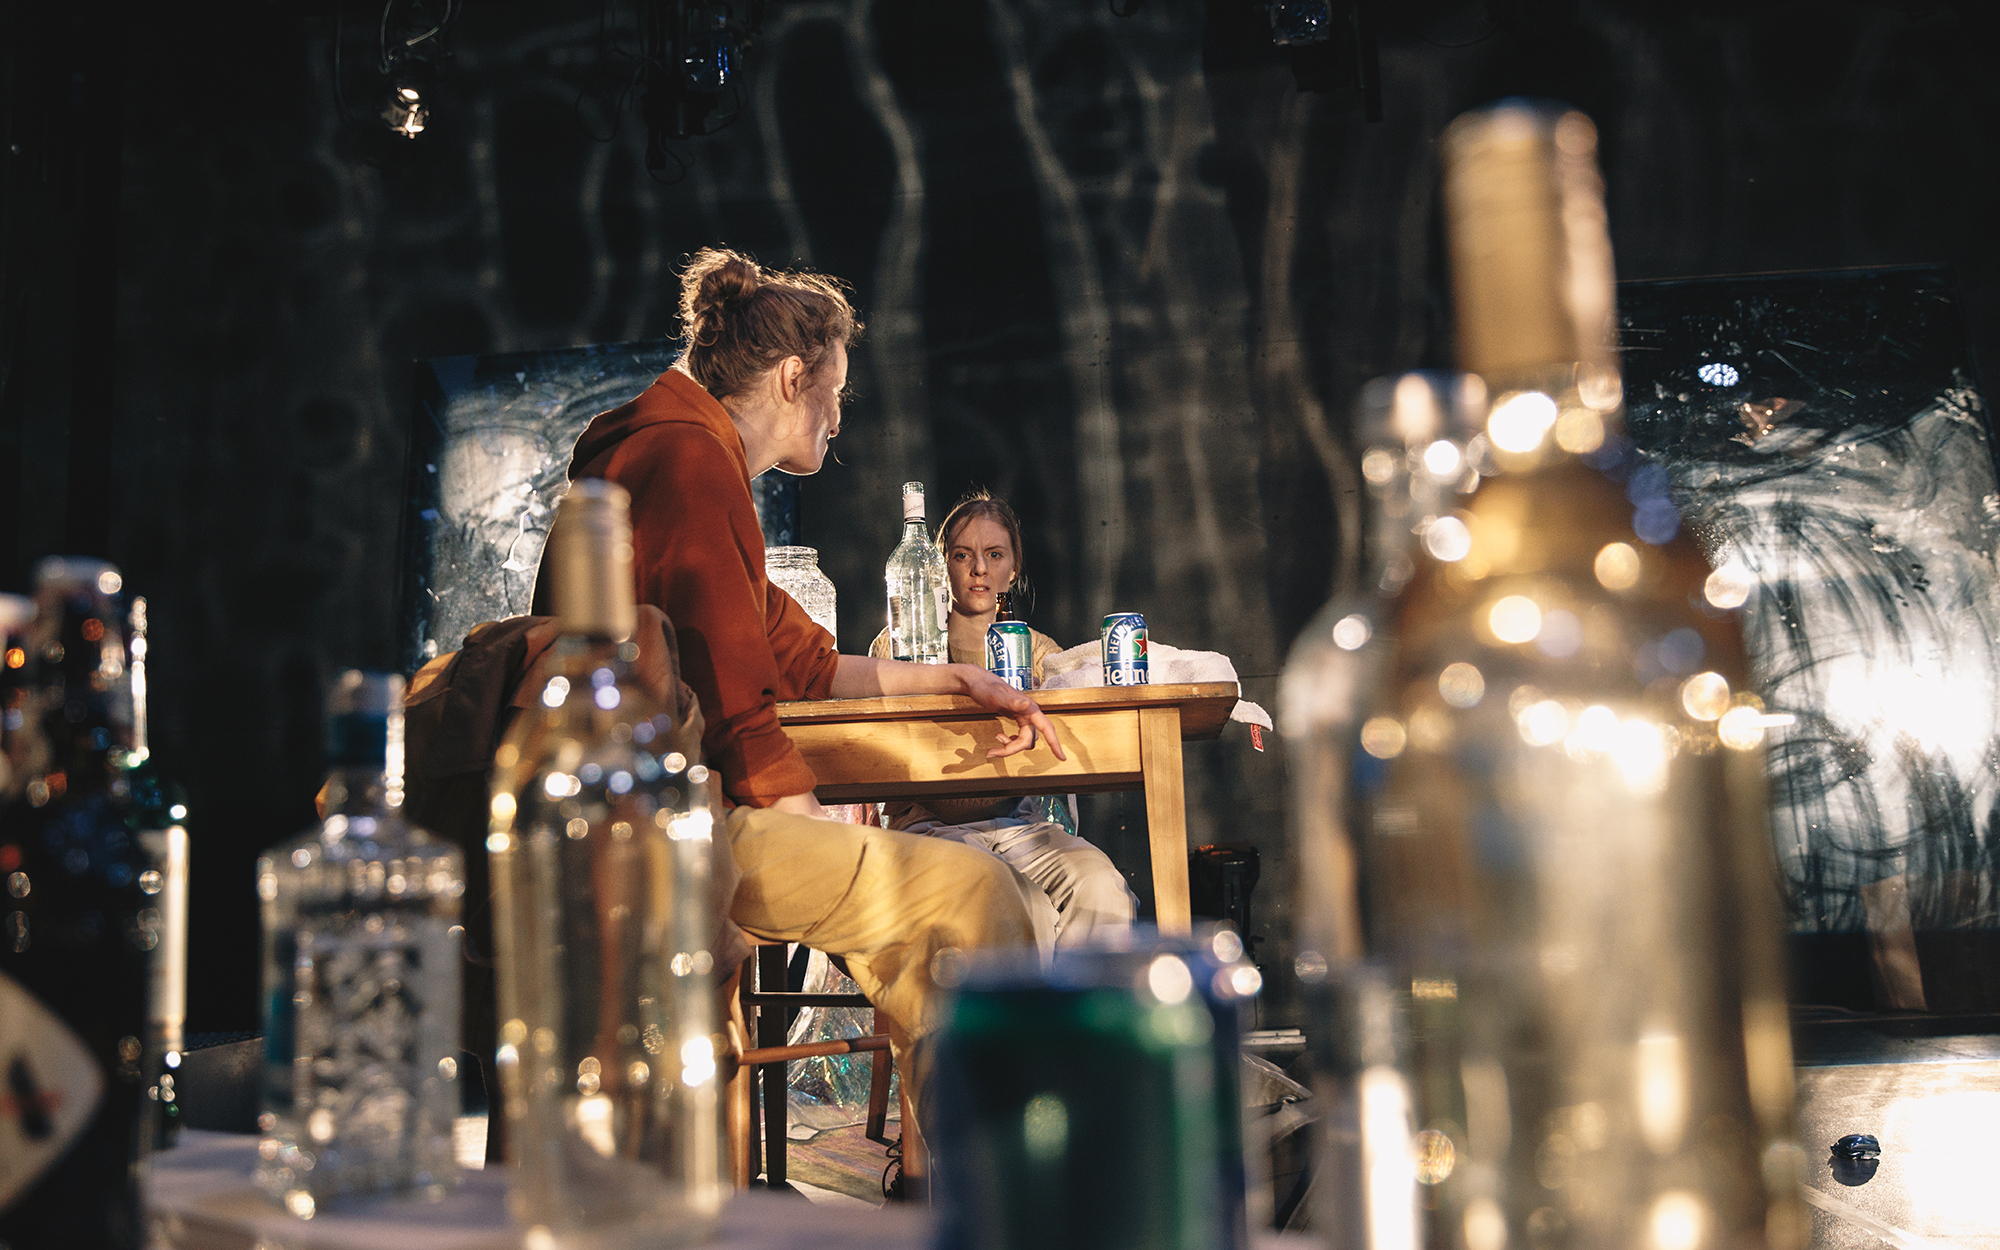 Od strani opazujemo Jess (Ajda Smrekar) in Sarah (Lena Hribar Škrlec), ki sedita za kuhinjsko mizo, pijeta in se pogovarjata. Na mizi kozarec z ribo, steklenica in dve pločevinki piva. V ospredju je na tleh več steklenic. Avtor fotografije: Peter Giodani.